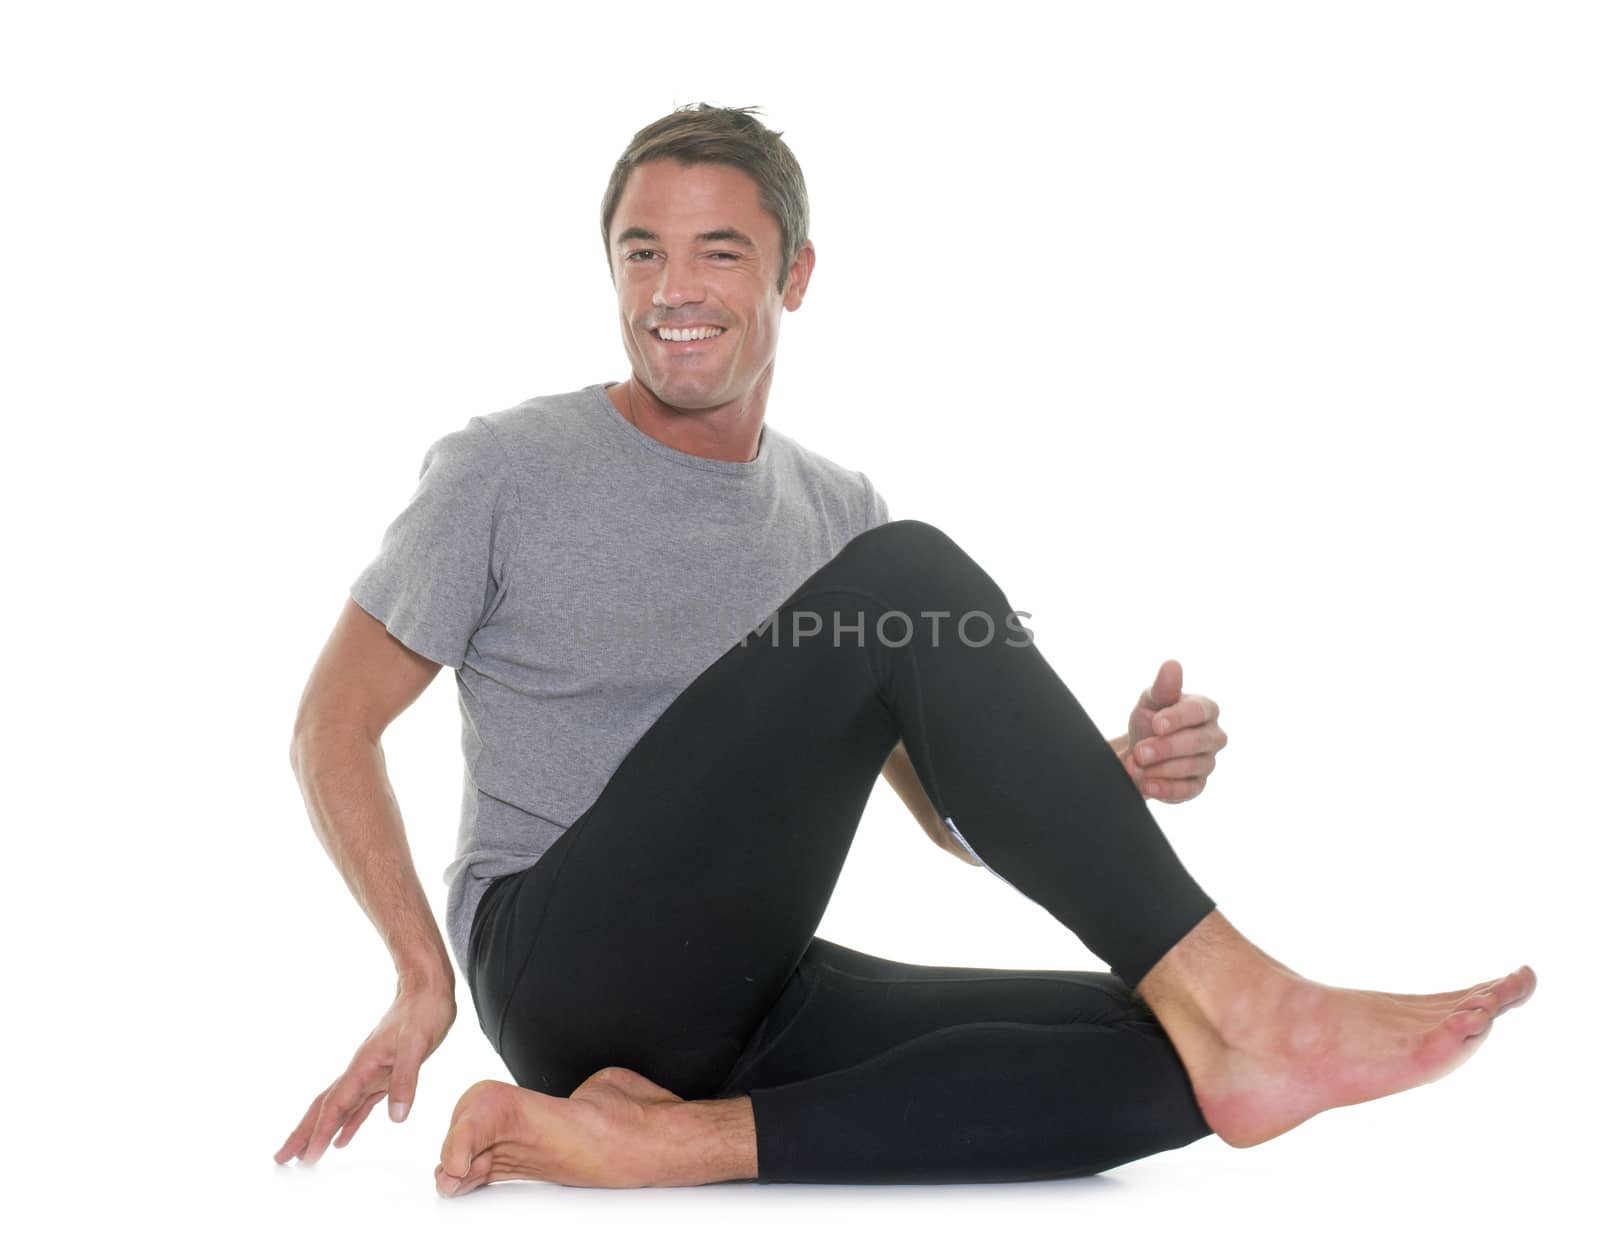 yoga man in studio by cynoclub